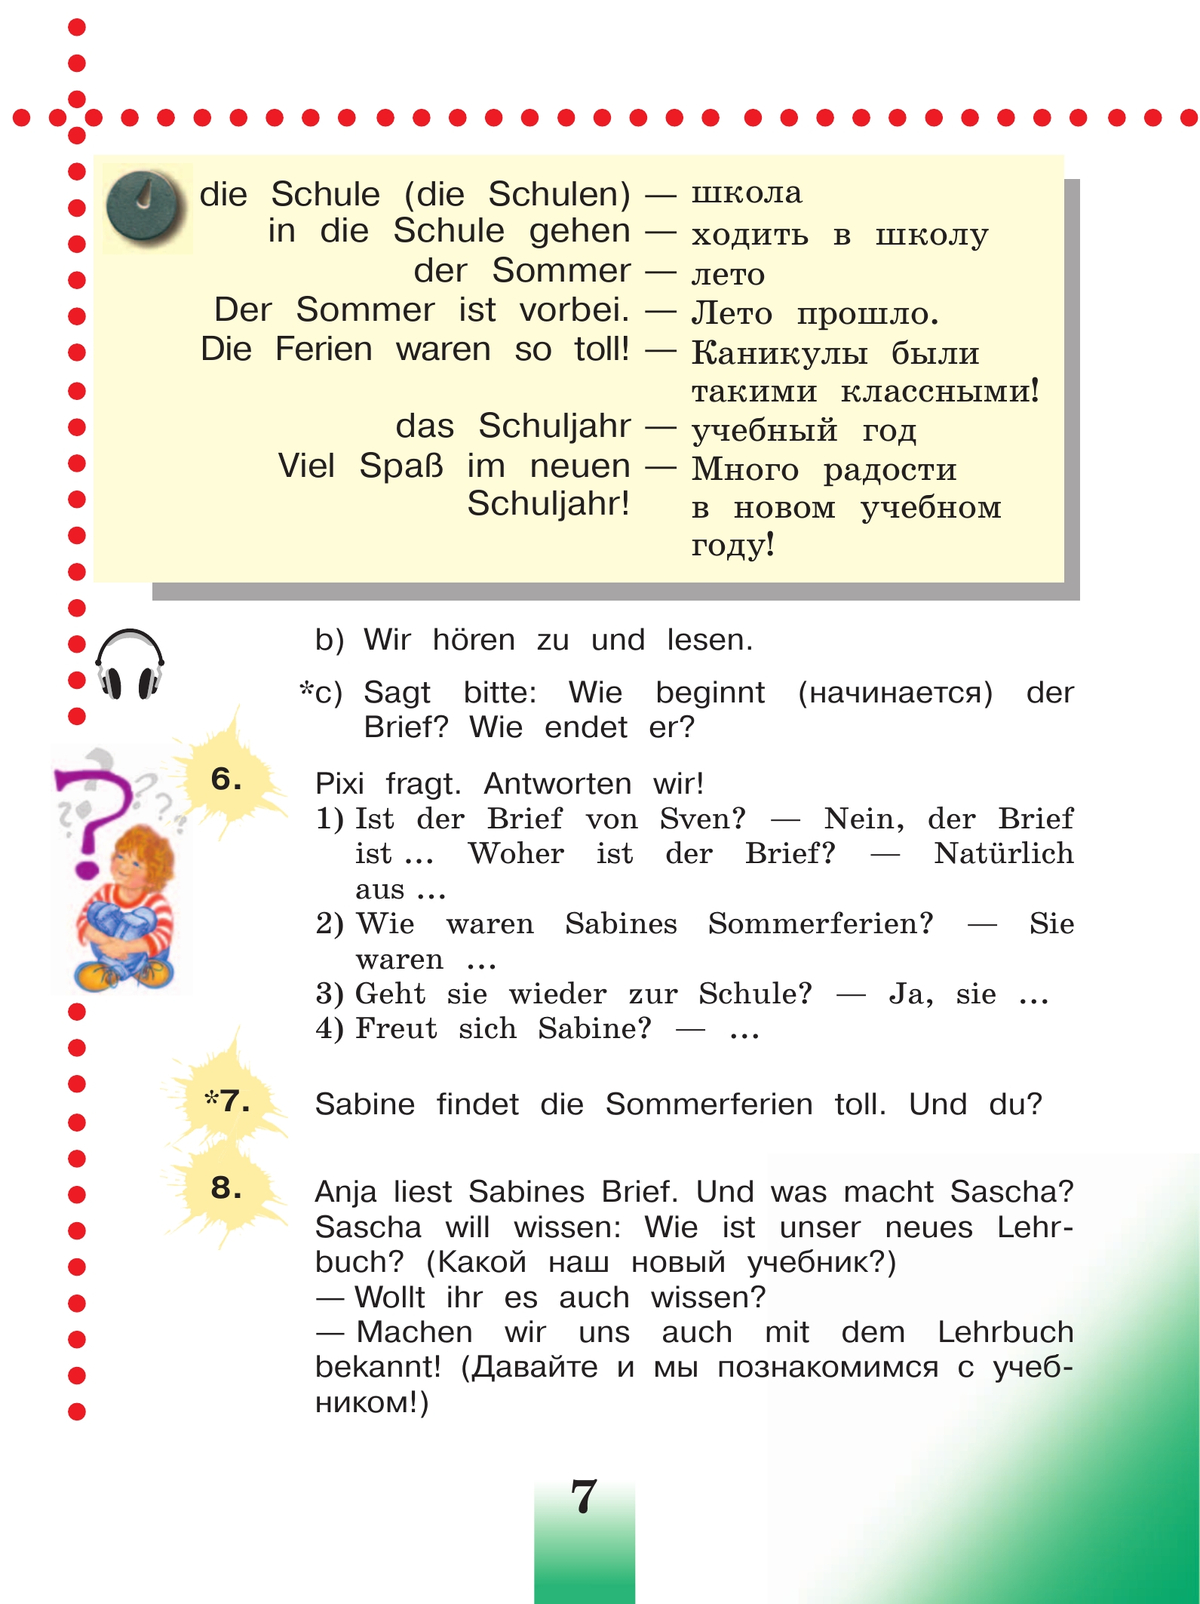 Немецкий язык. 3 класс. Учебник. В 2 ч. Часть 1 11